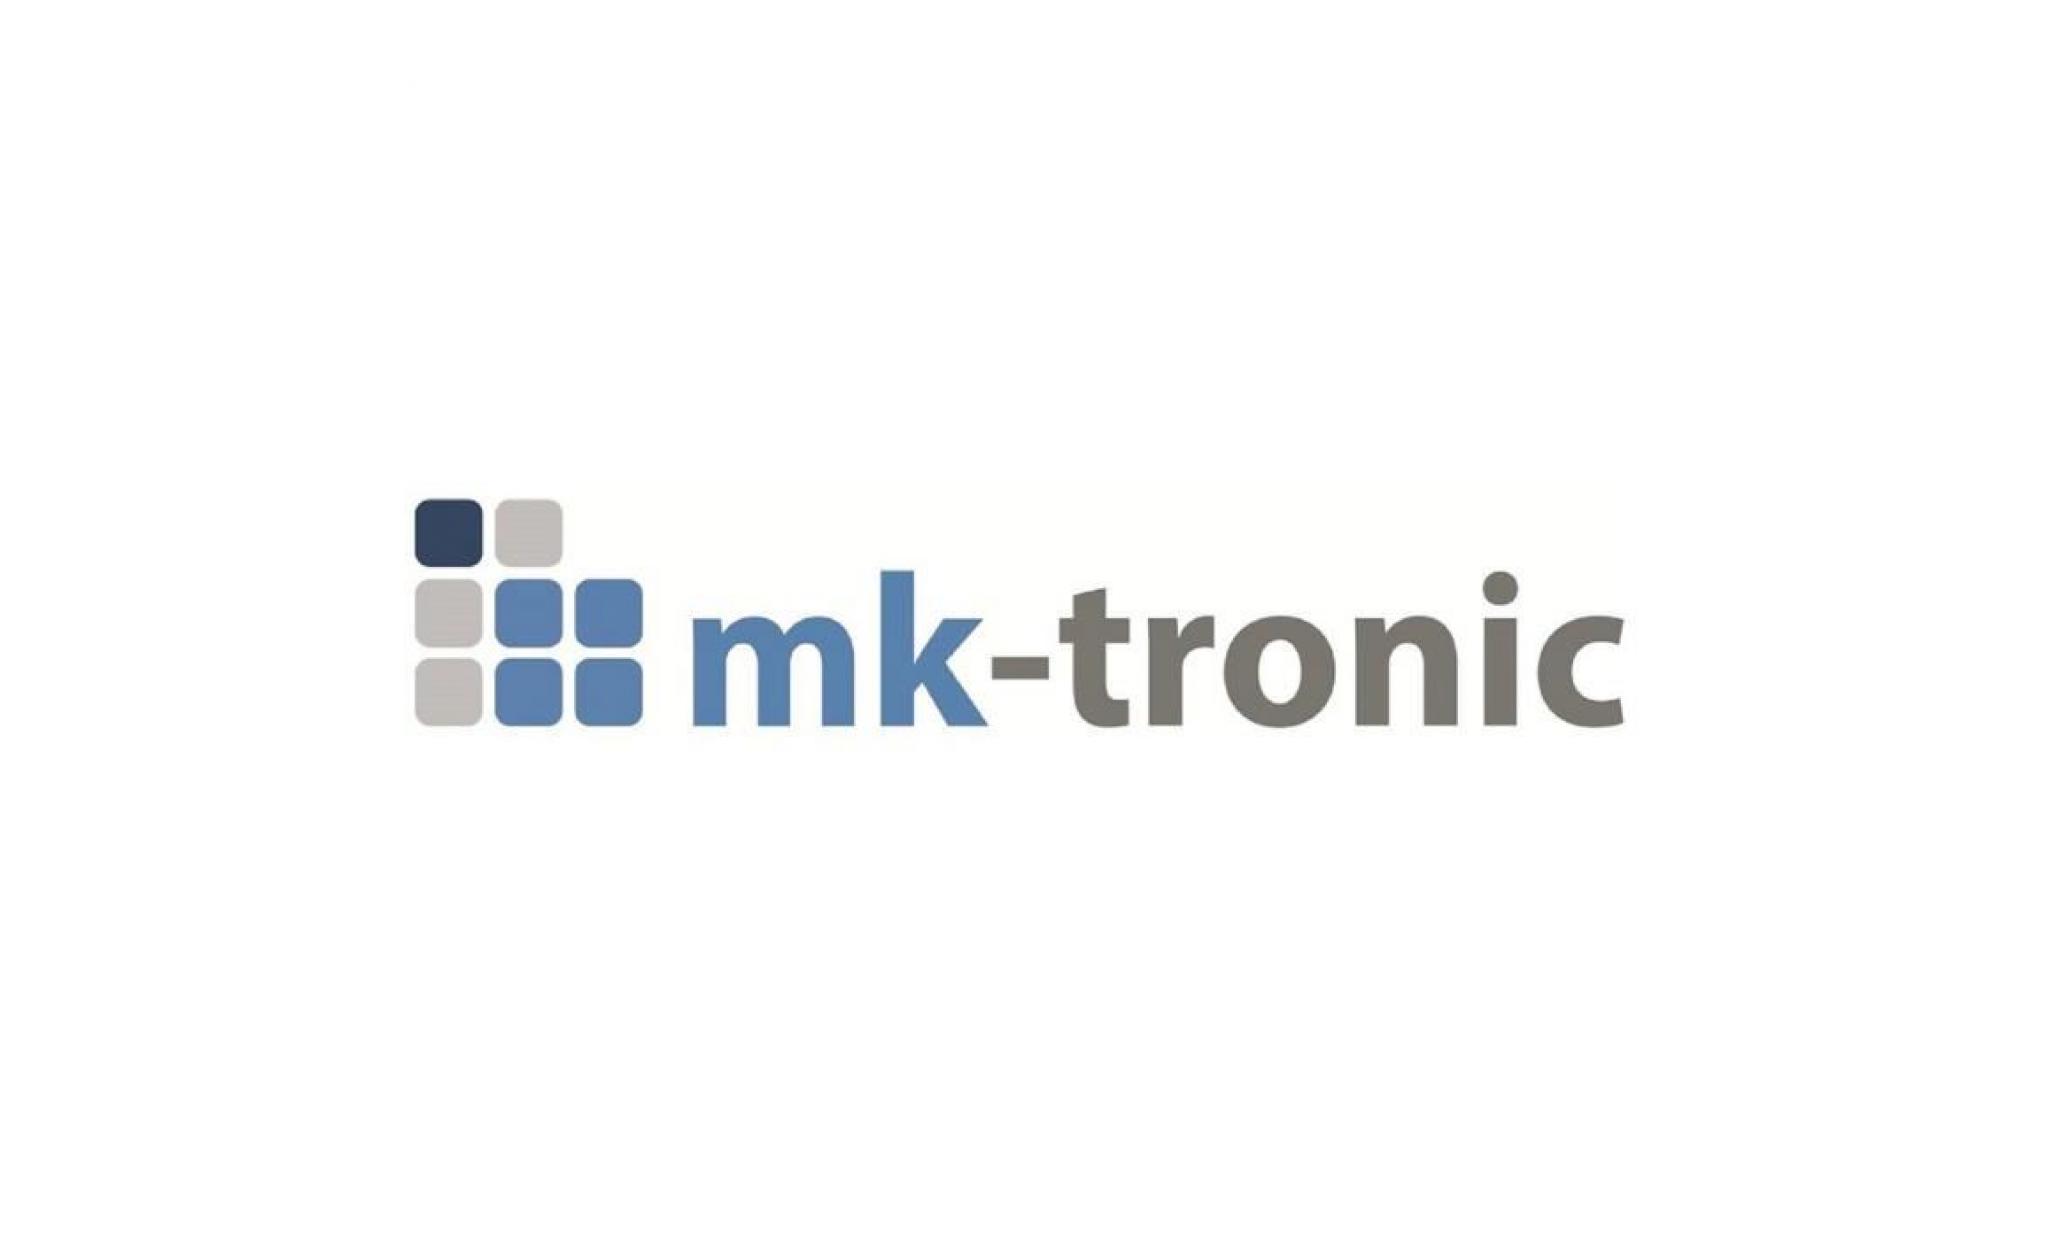 Échange régulateur logon  de m g3 de elco klöckner chauffage numéro d'article 12003461 de mk tronic